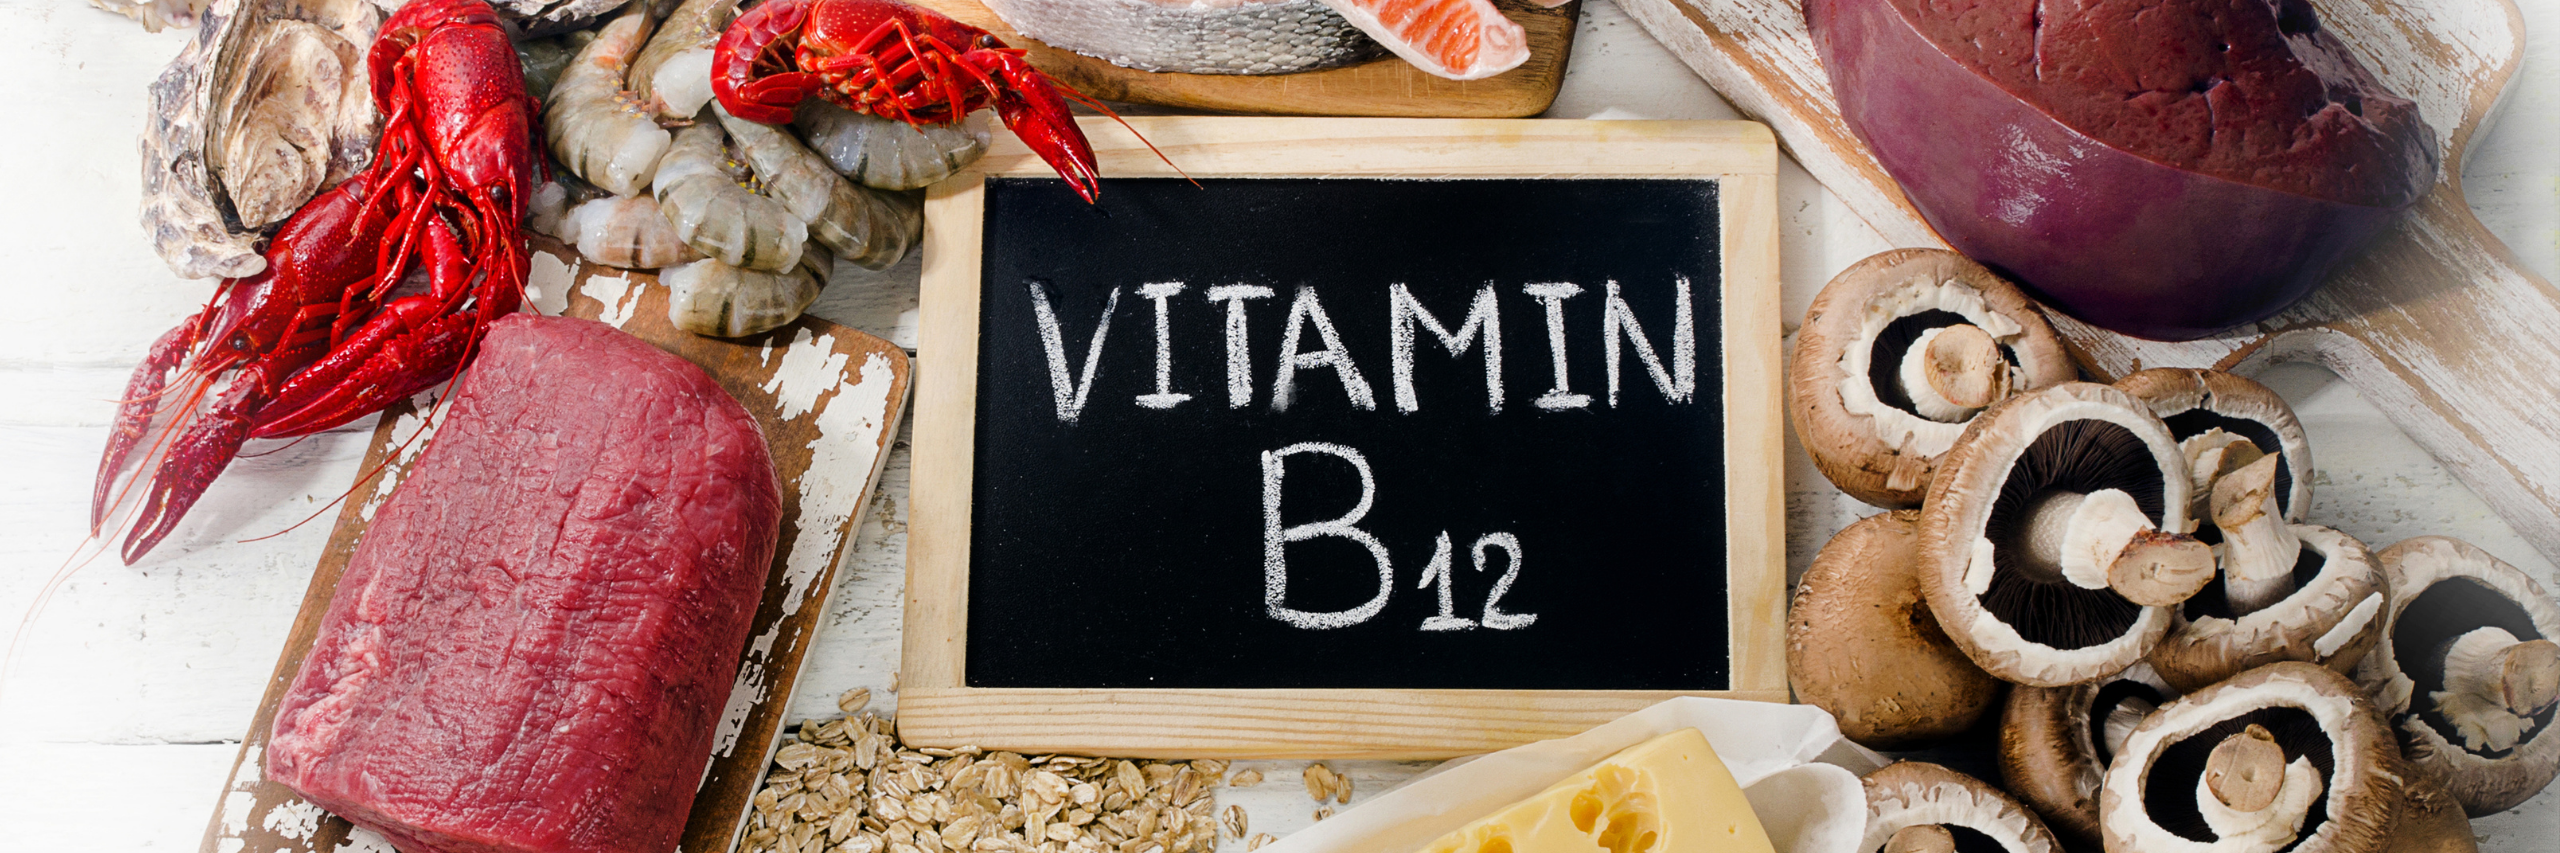 Vitamin B12-Supplementierung